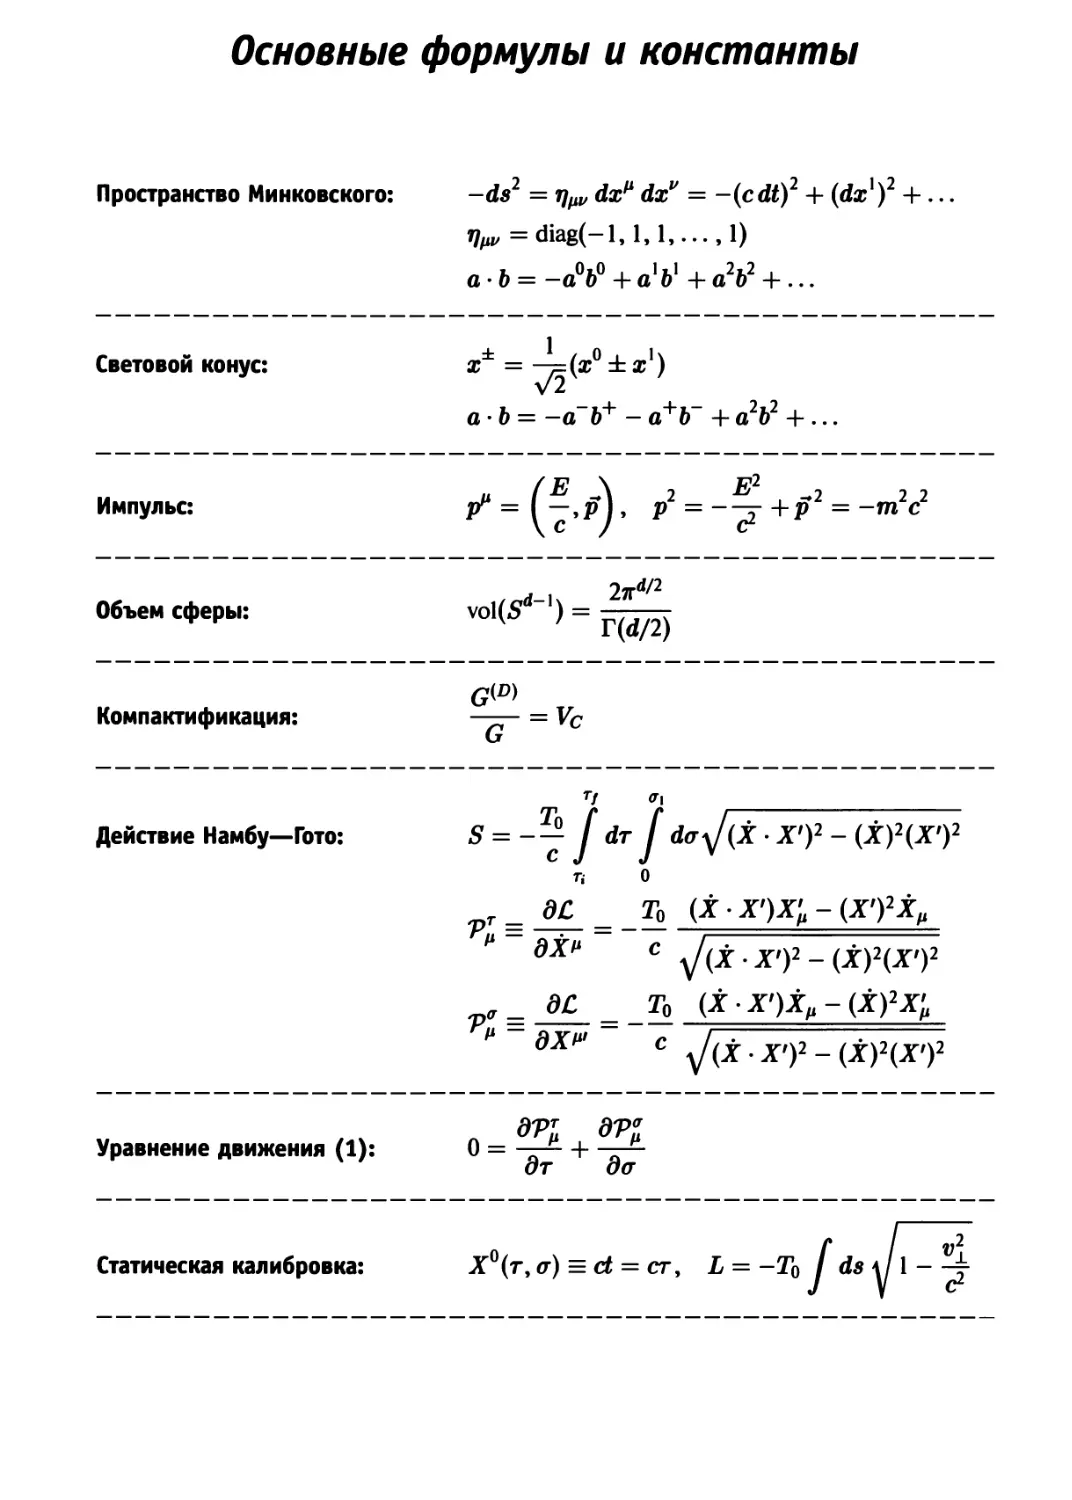 Основные формулы и константы